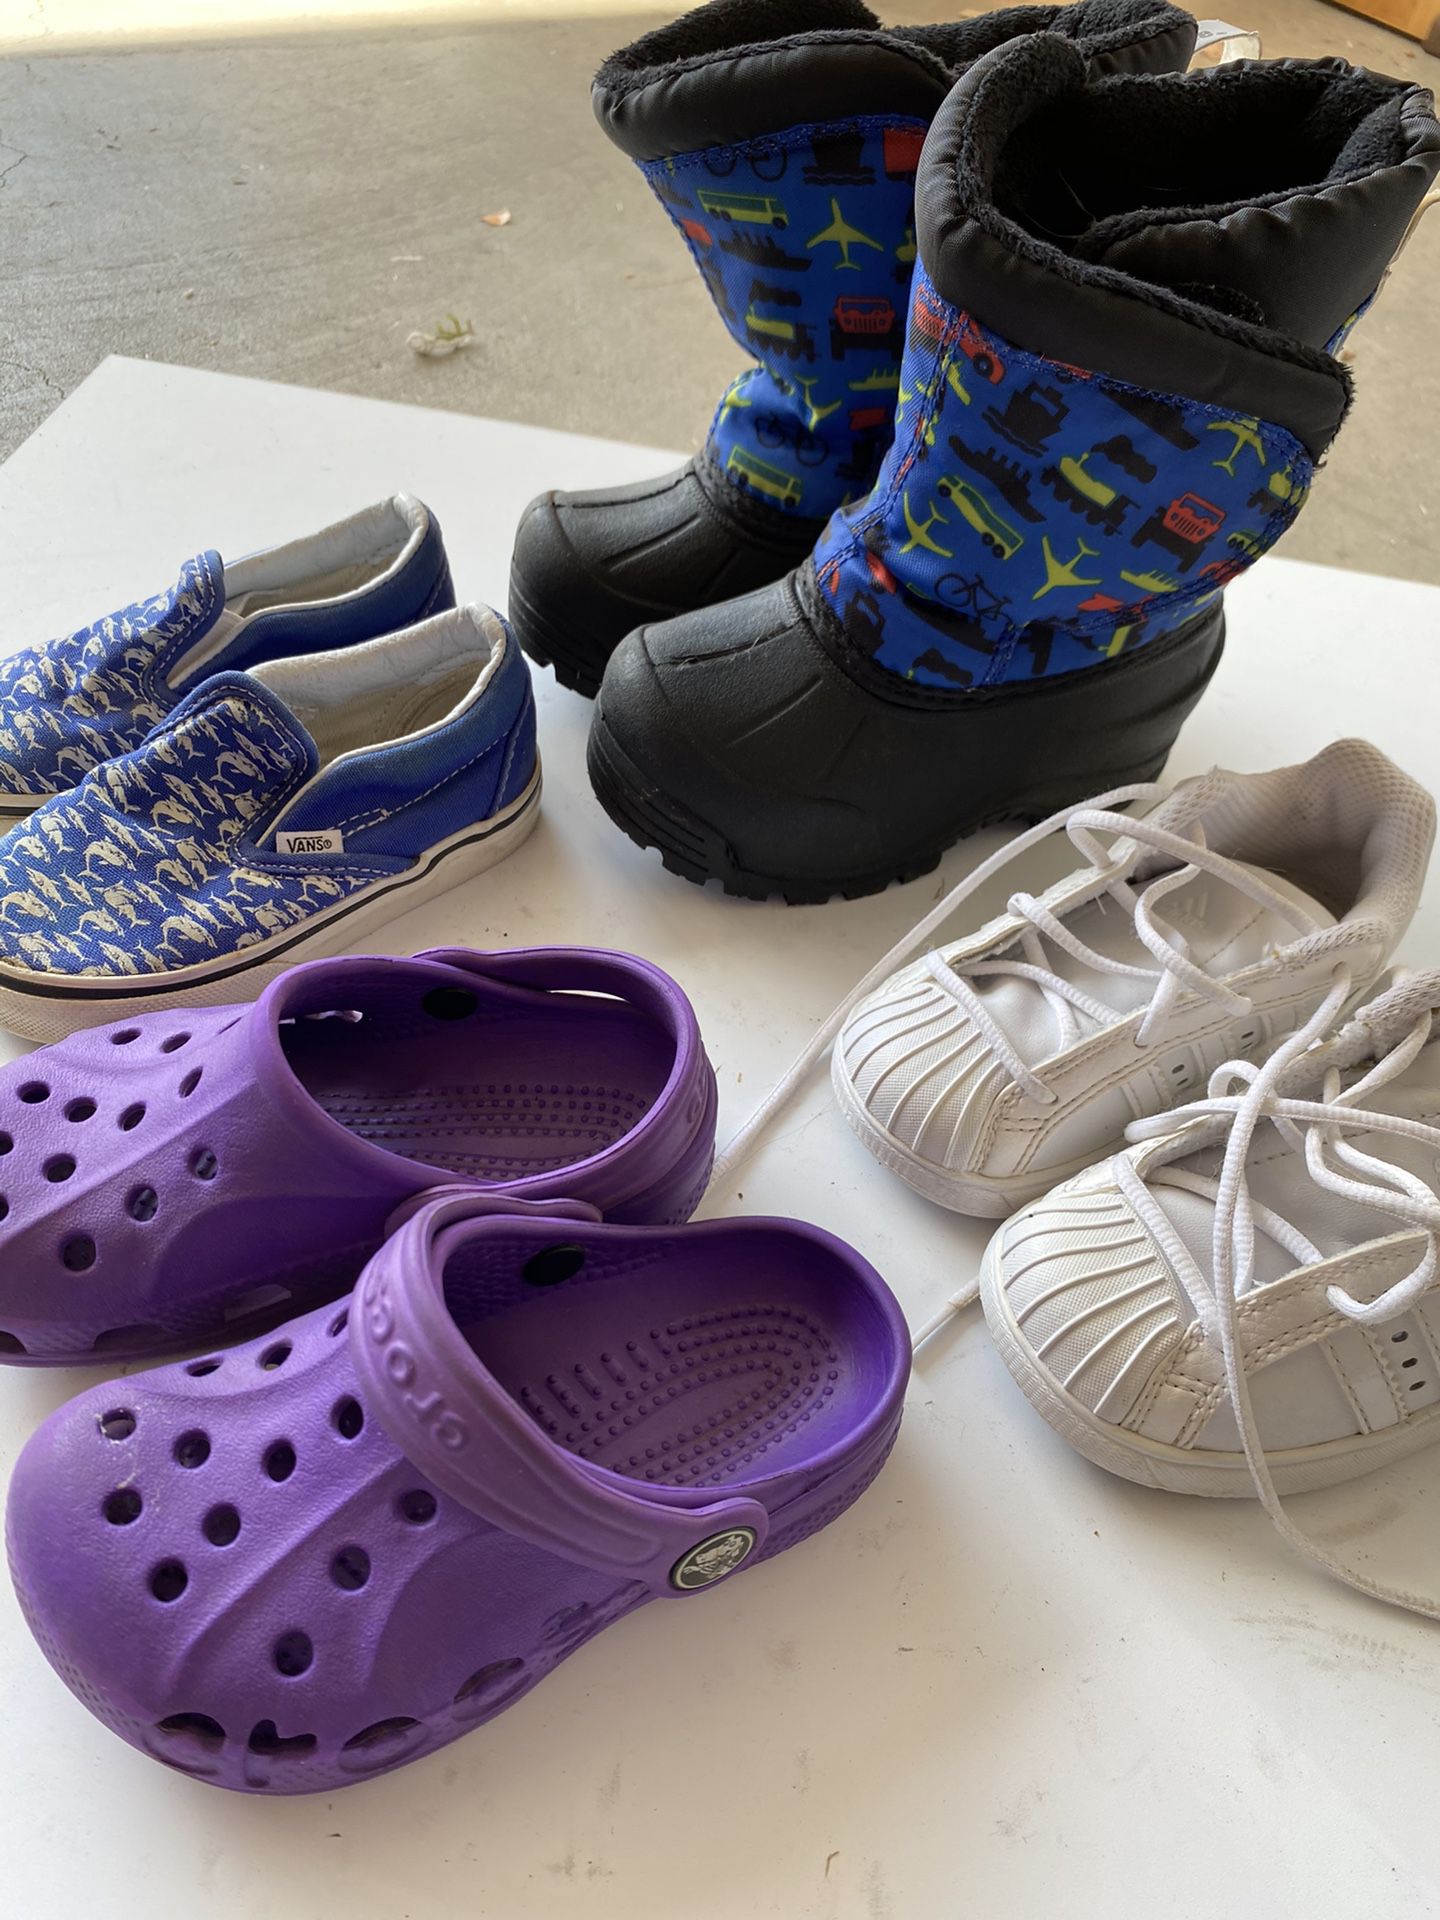 Toddler Boy Size 6 Bundle ( Adidas, Northside, Vans, Crocks)